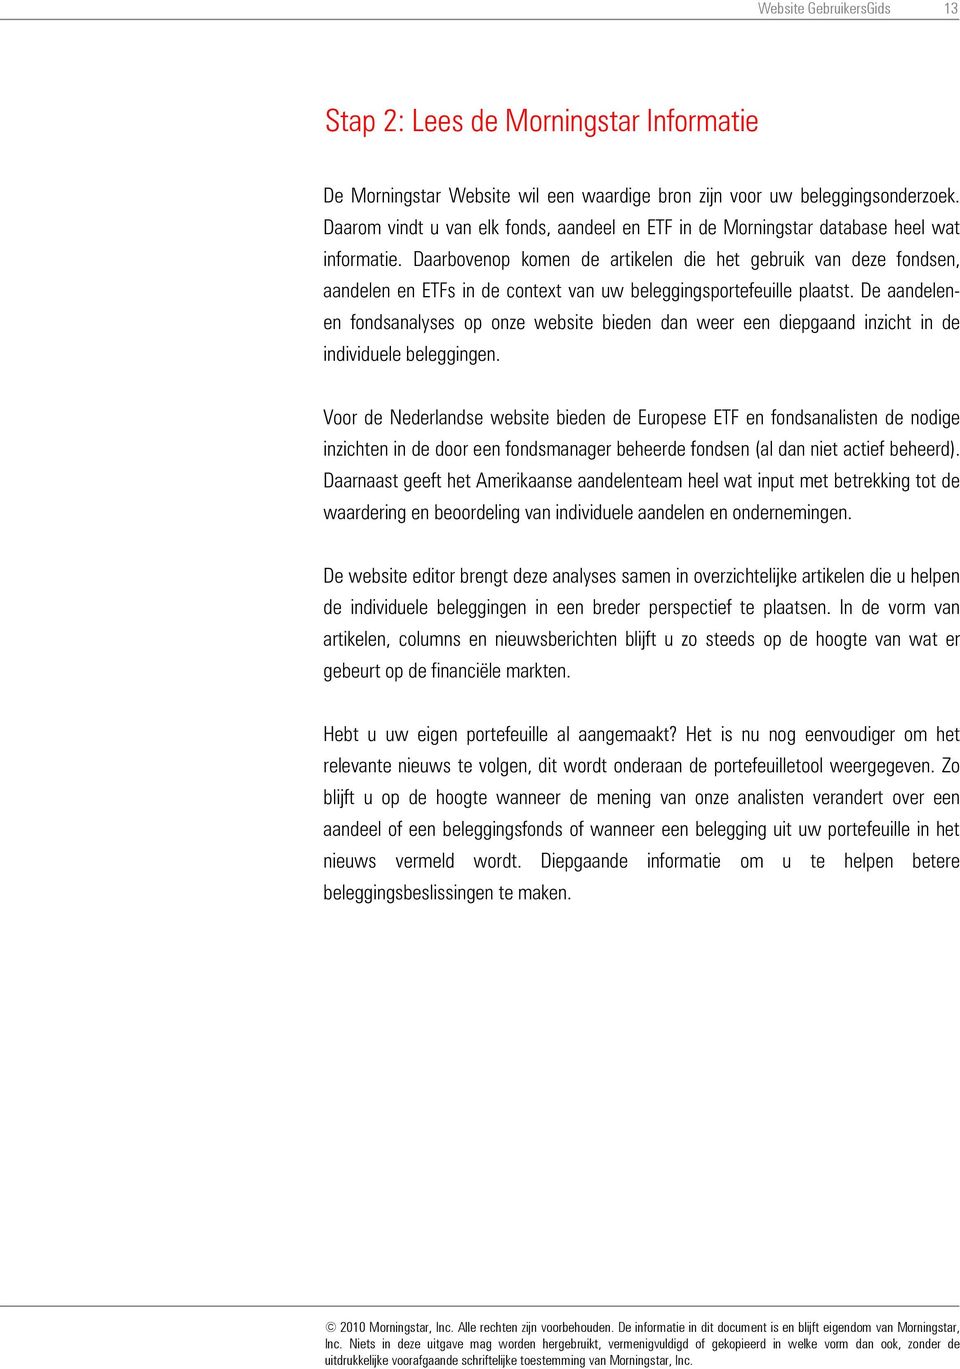 Dank u om Morningstar.nl te kiezen als uw beleggingspartner. Website  GebruikersGids 1 - PDF Gratis download